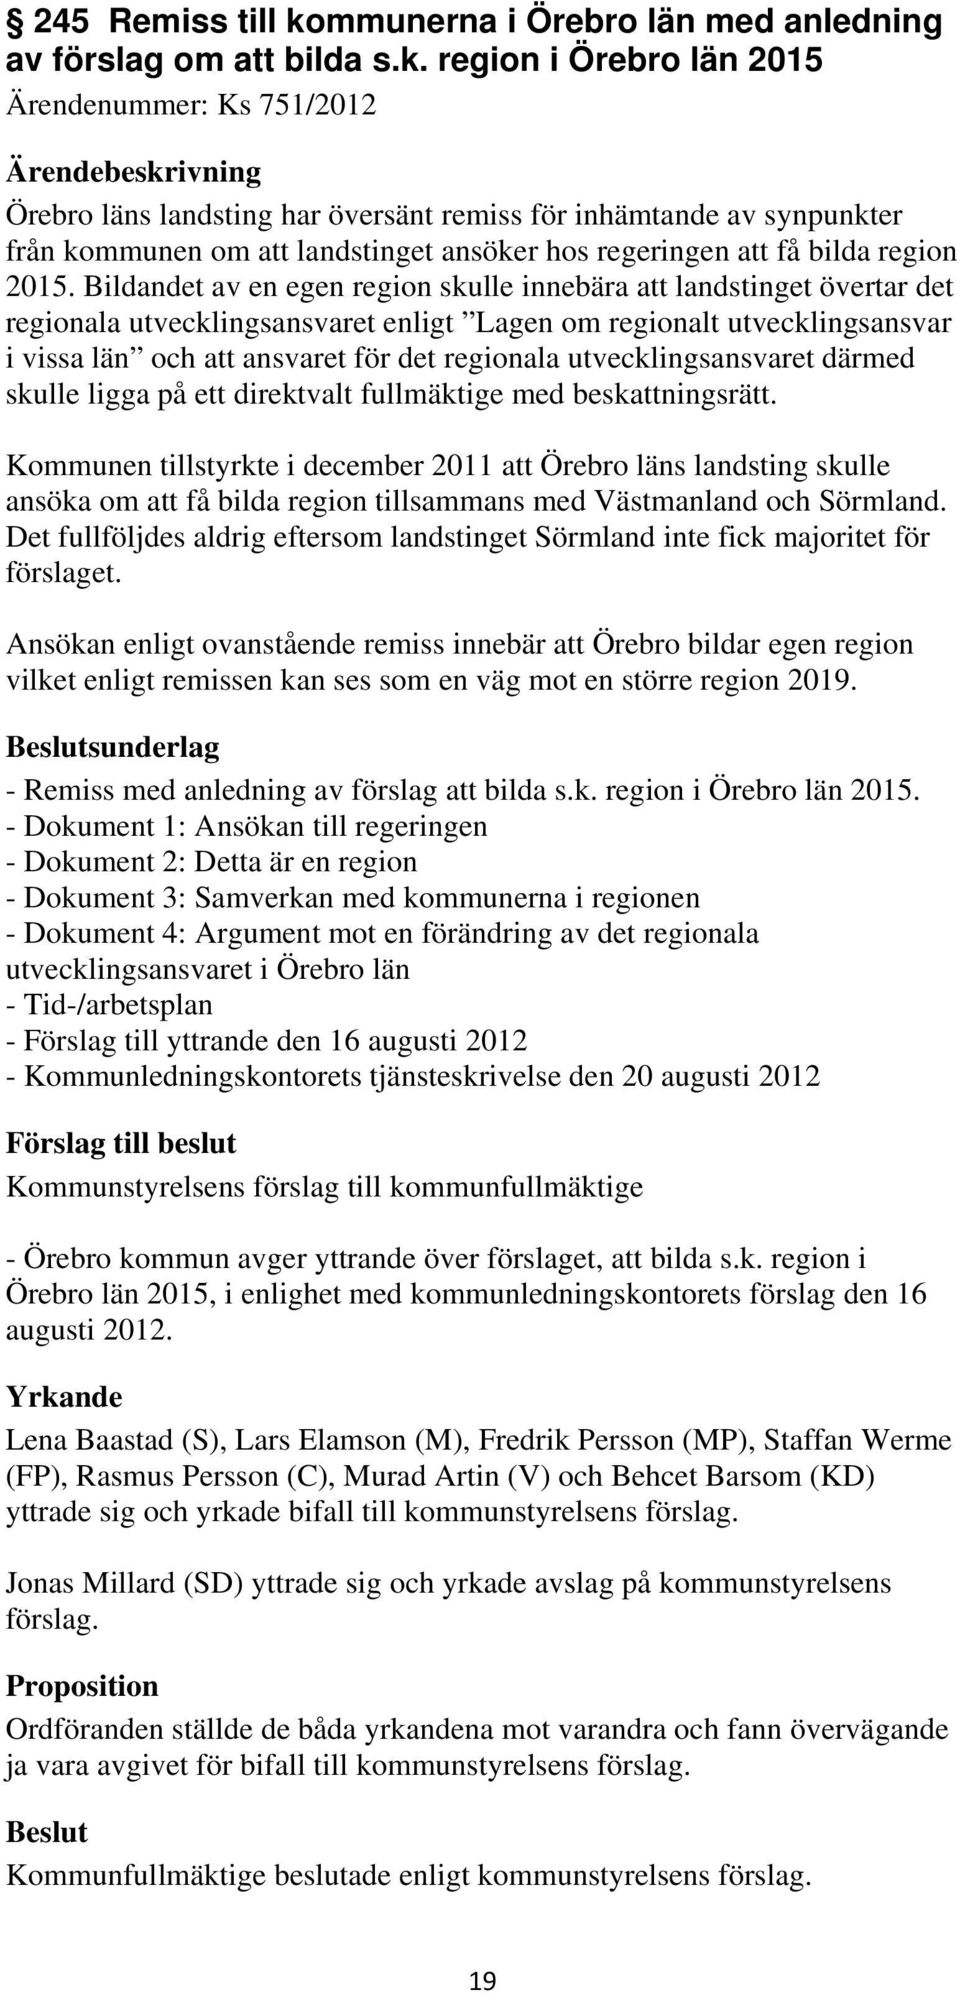 region i Örebro län 2015 Ärendenummer: Ks 751/2012 Örebro läns landsting har översänt remiss för inhämtande av synpunkter från kommunen om att landstinget ansöker hos regeringen att få bilda region